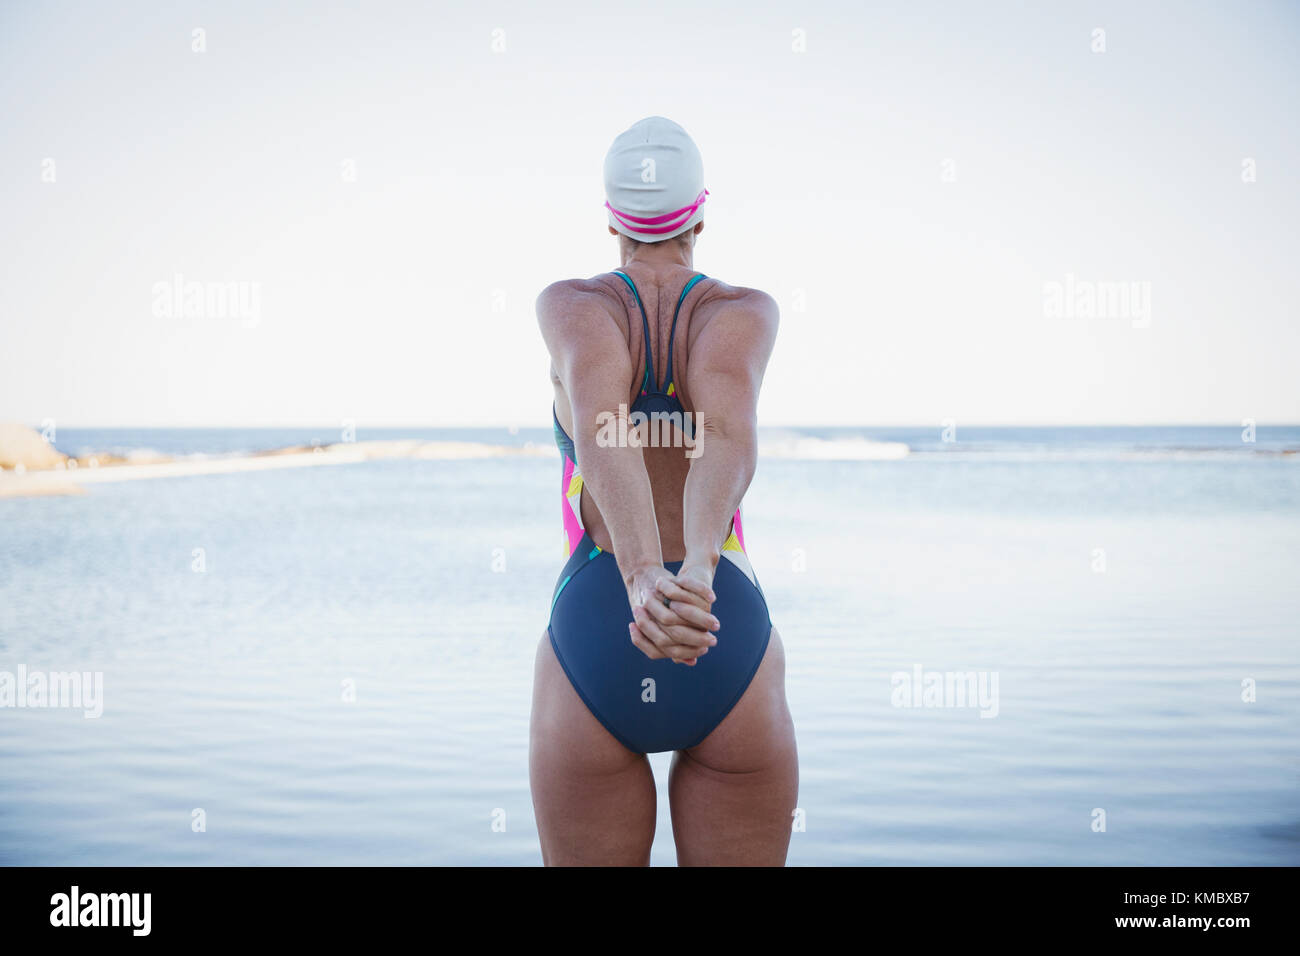 Nuotatore femminile ad acqua aperta che allunga le braccia all'oceano Foto Stock